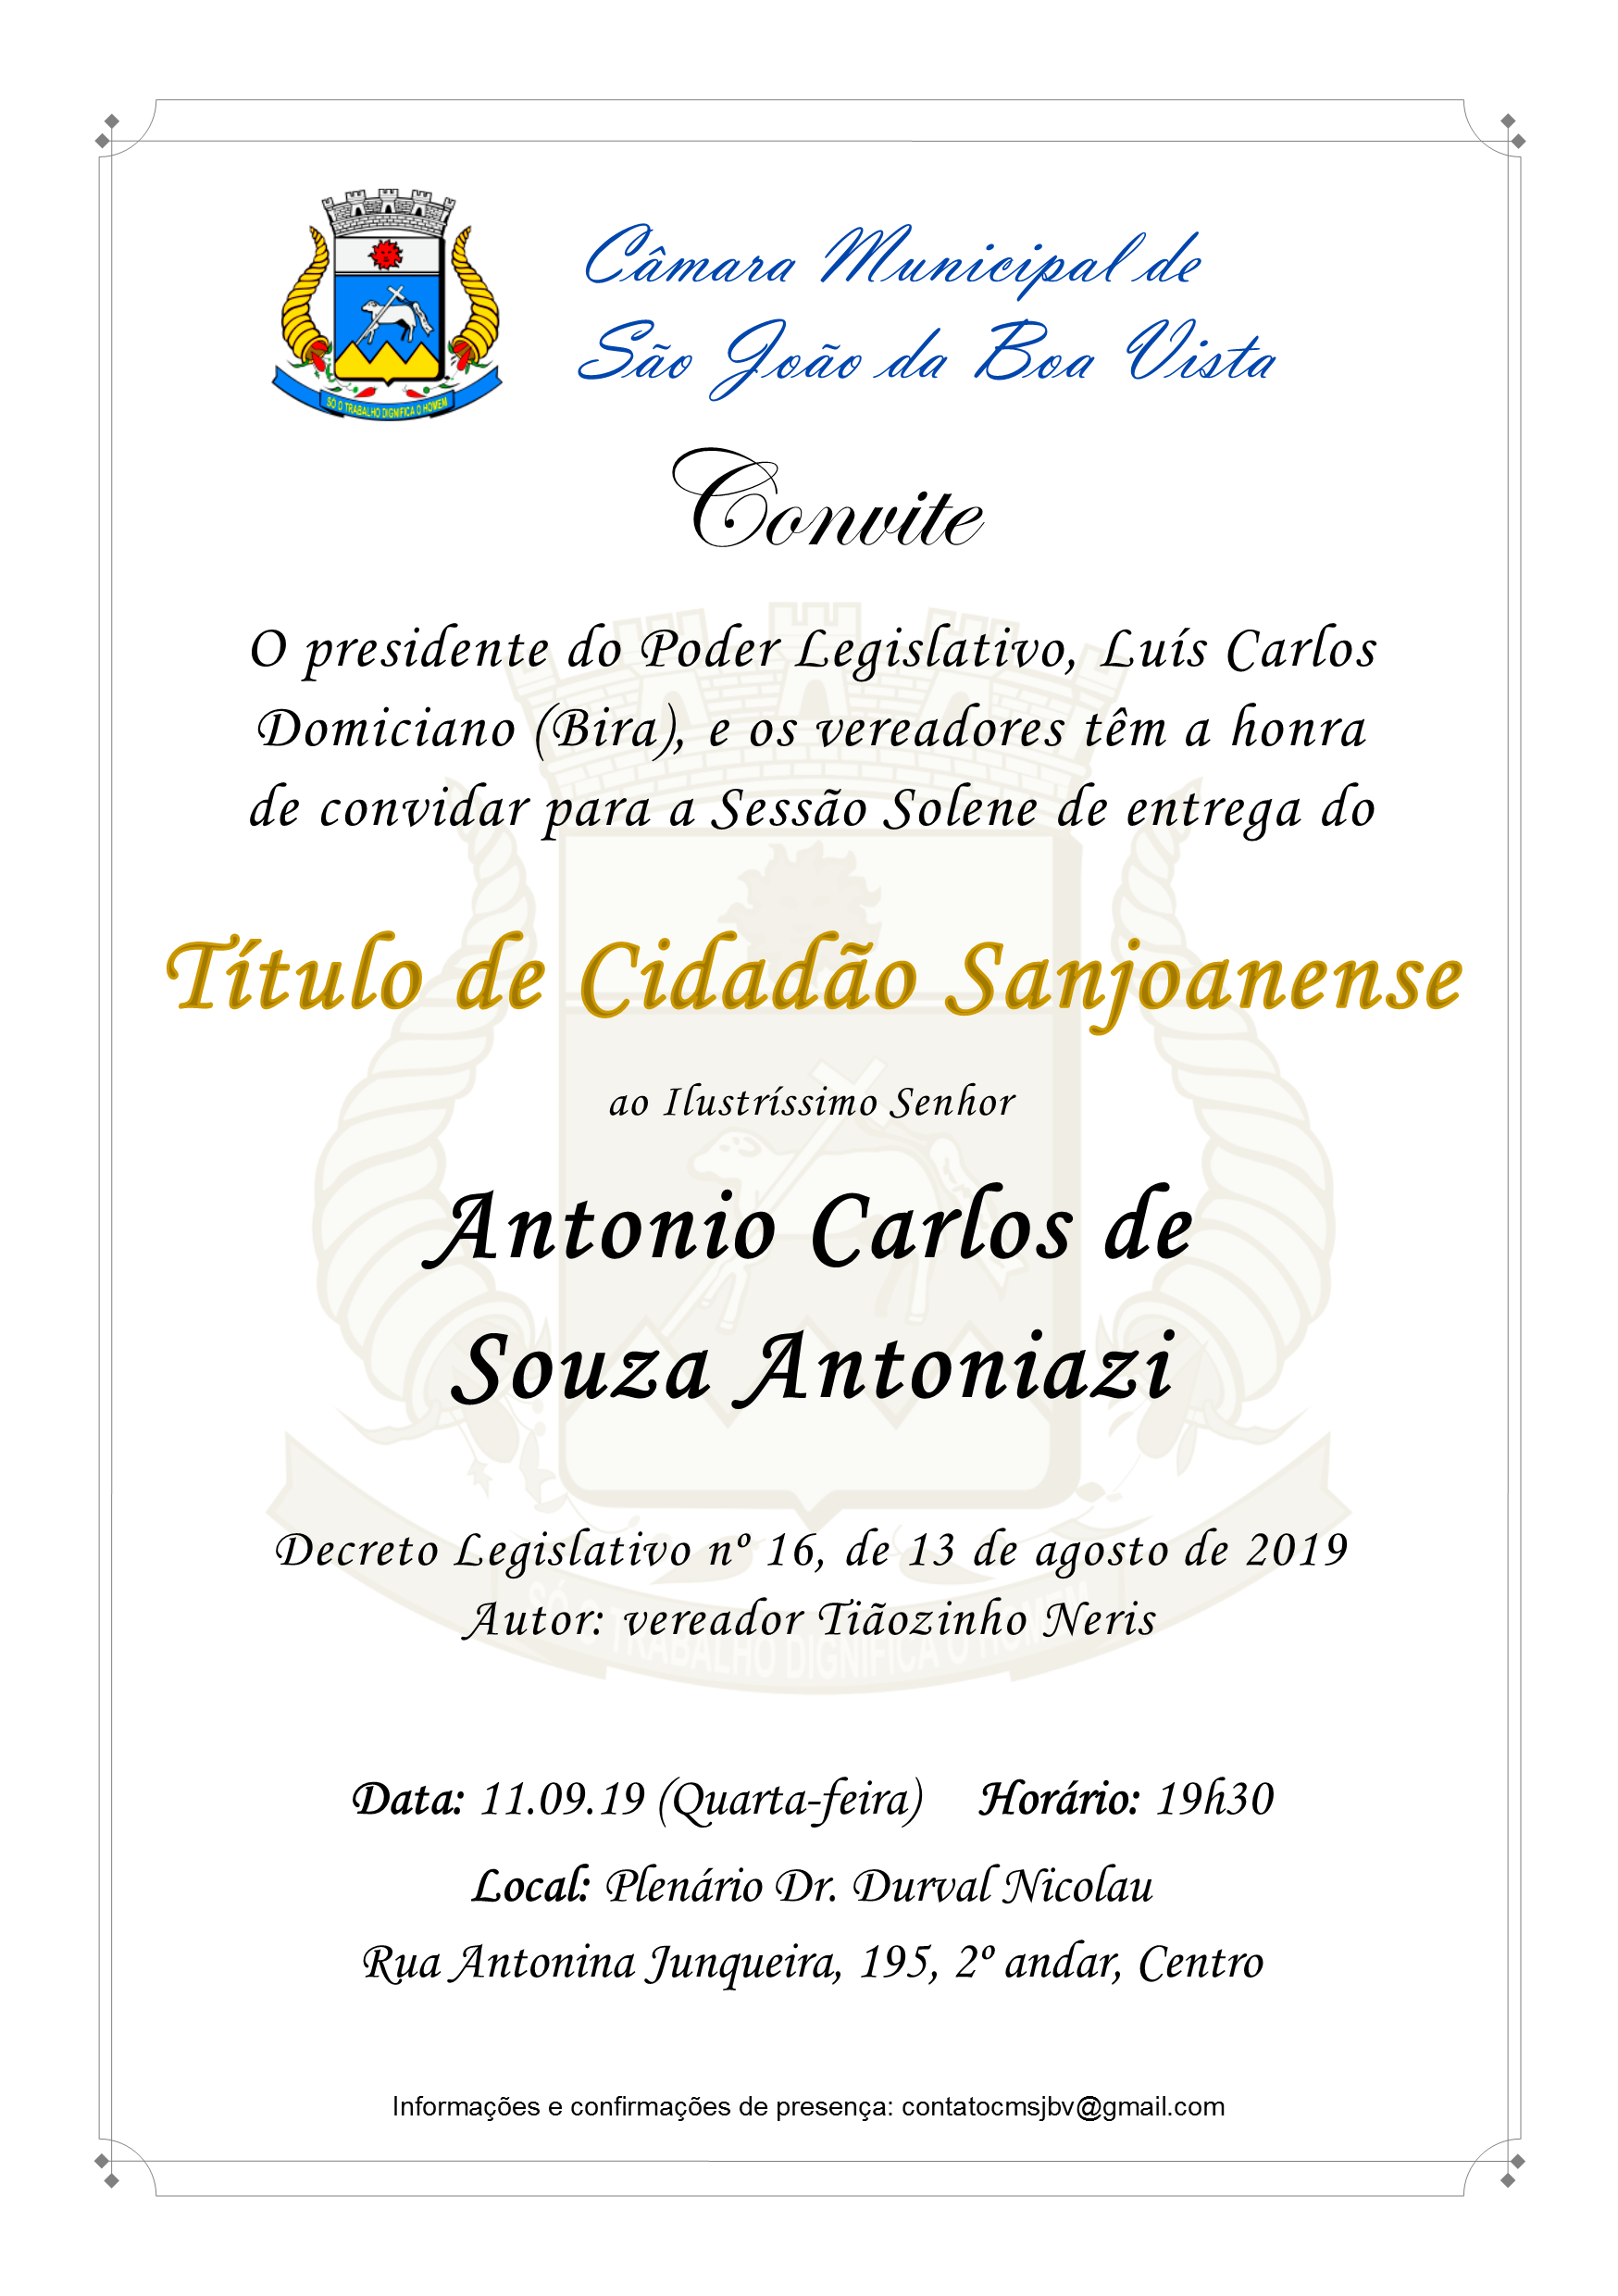 Câmara convida para entrega do Título de Cidadão Sanjoanense a Antonio Carlos de Souza Antoniazi